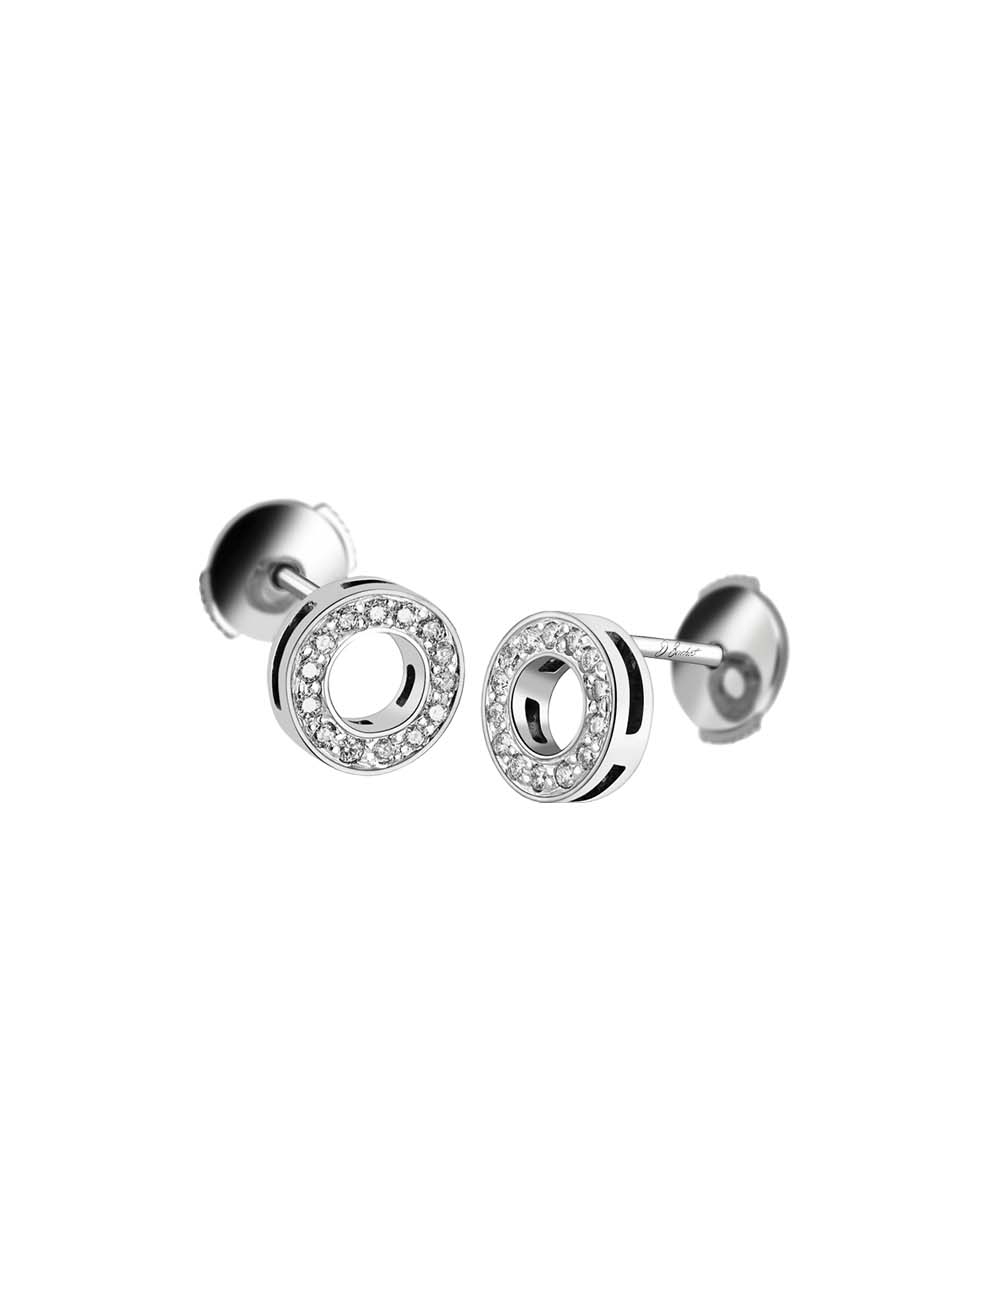 Boucles d'oreilles Femme Cercle en or 750 et diamants blancs